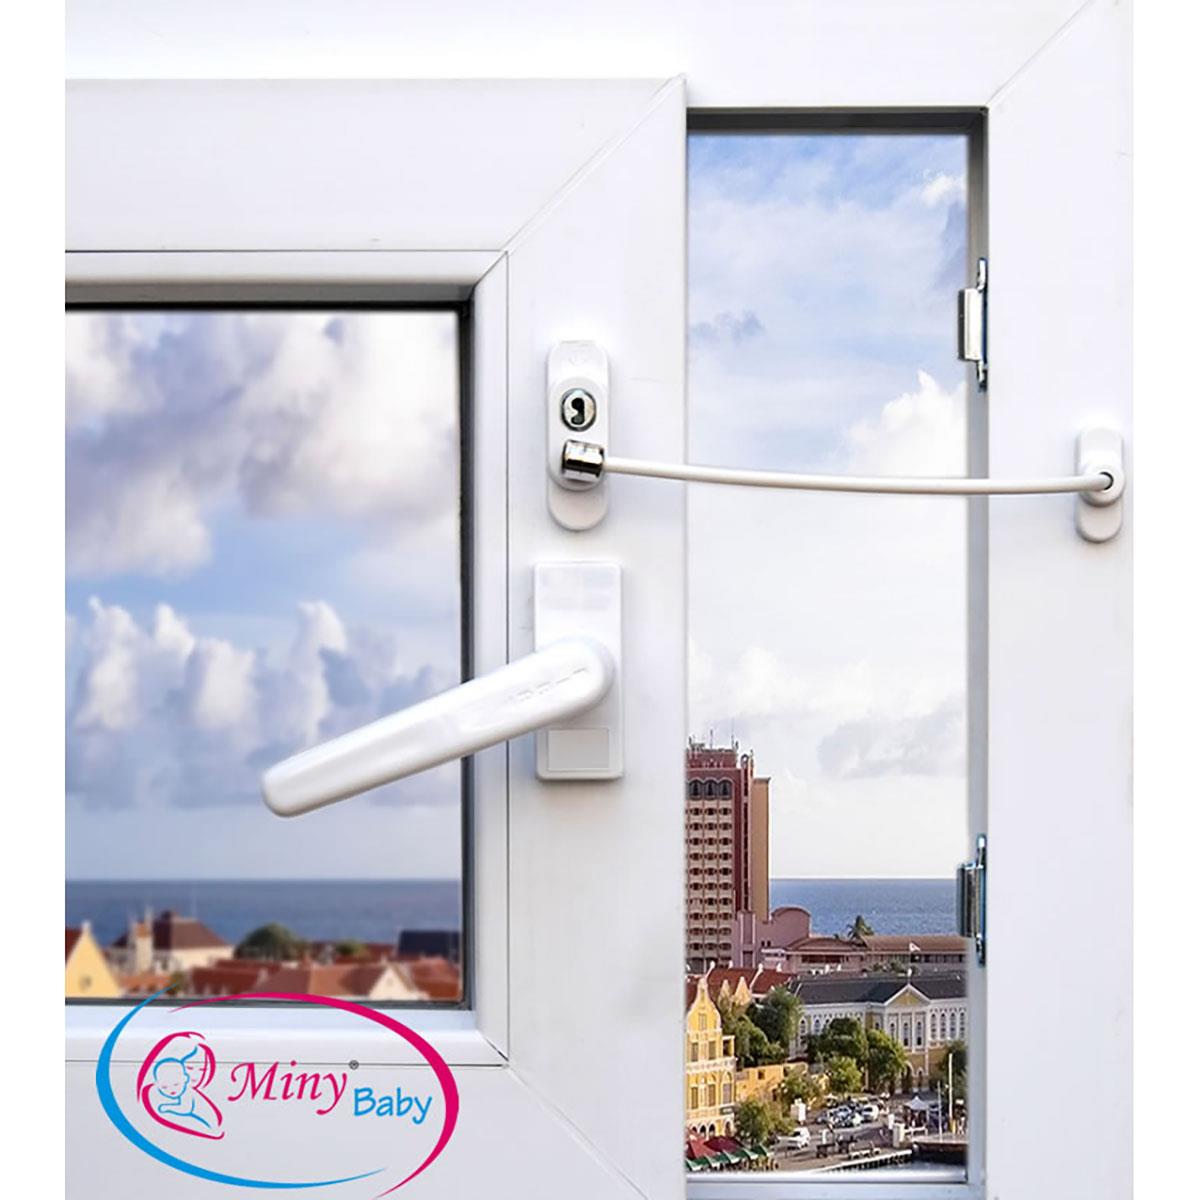 Miny Baby Halatlı Pencere Kilidi Beyaz Fiyatı MB321B